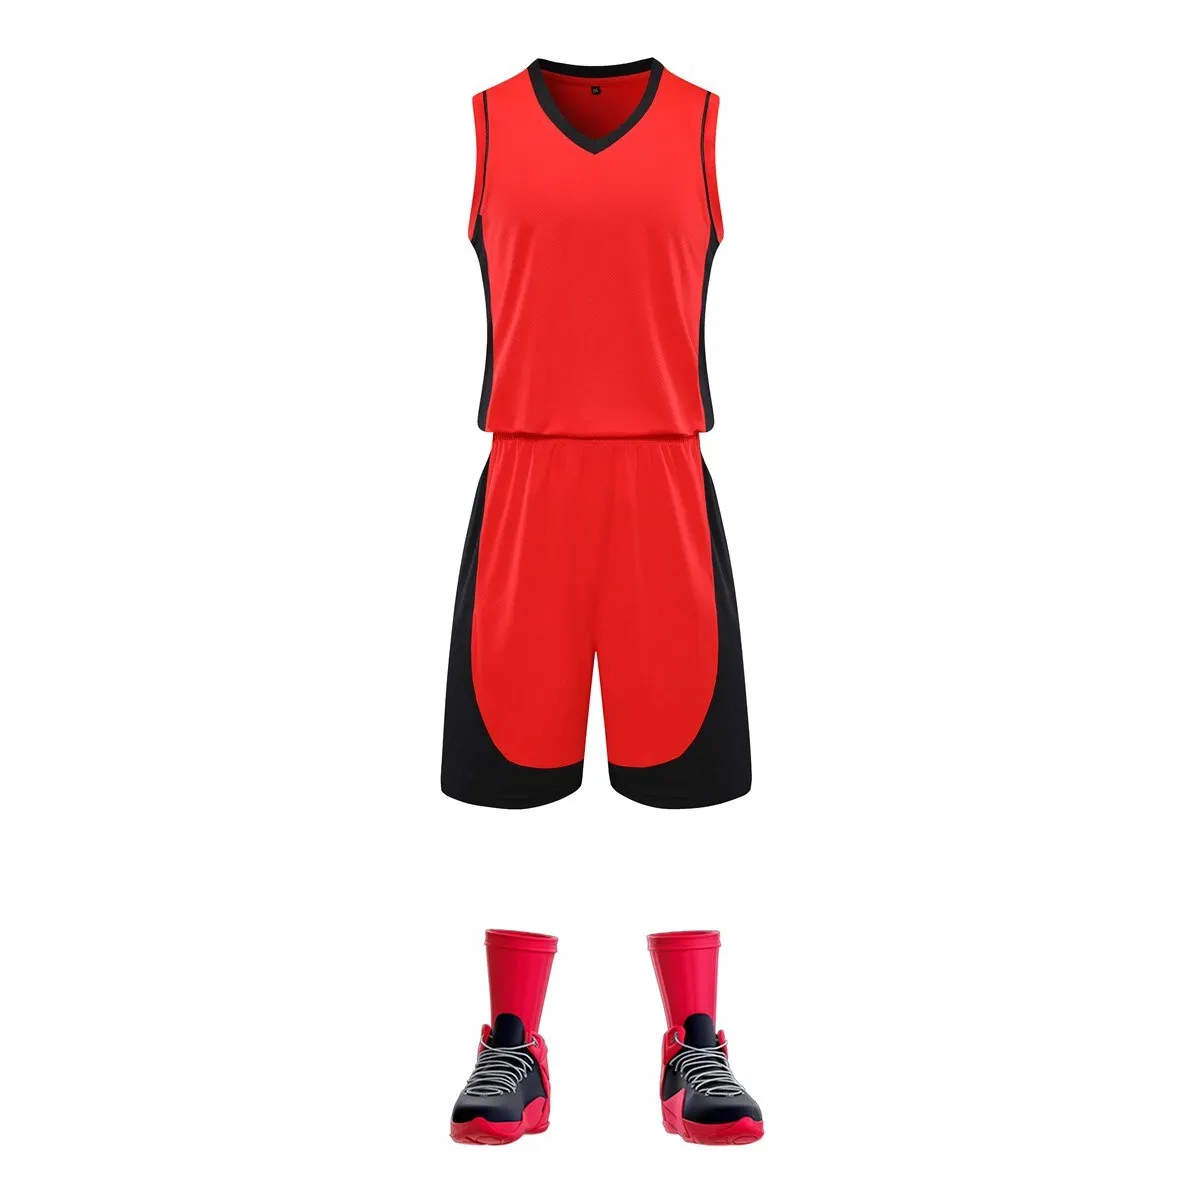 La squadra sportiva indossa l'alta qualità In diverse dimensioni per creare il proprio prodotto In stile migliore uniforme da basket In poliestere